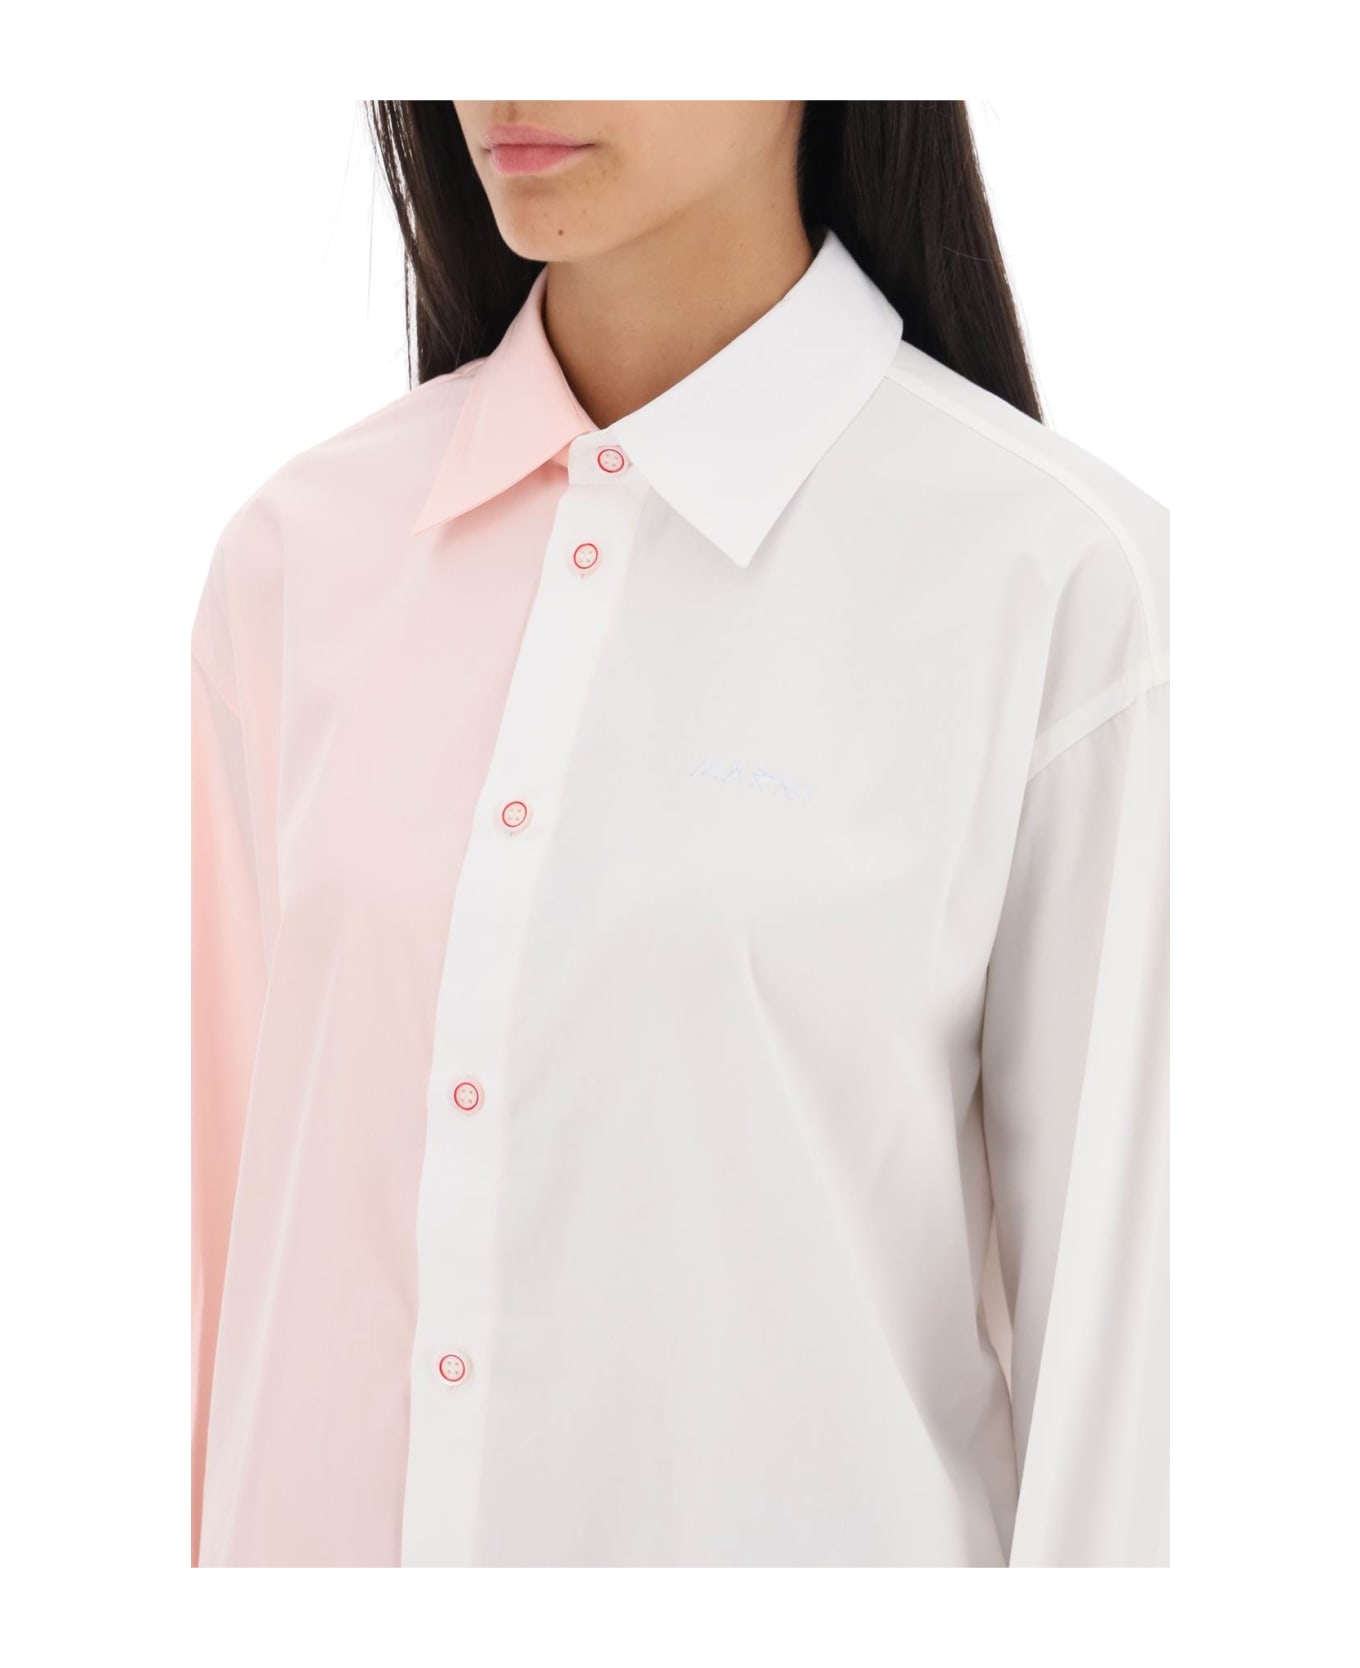 Marni Two-tone Asymmetric Shirt - Pink